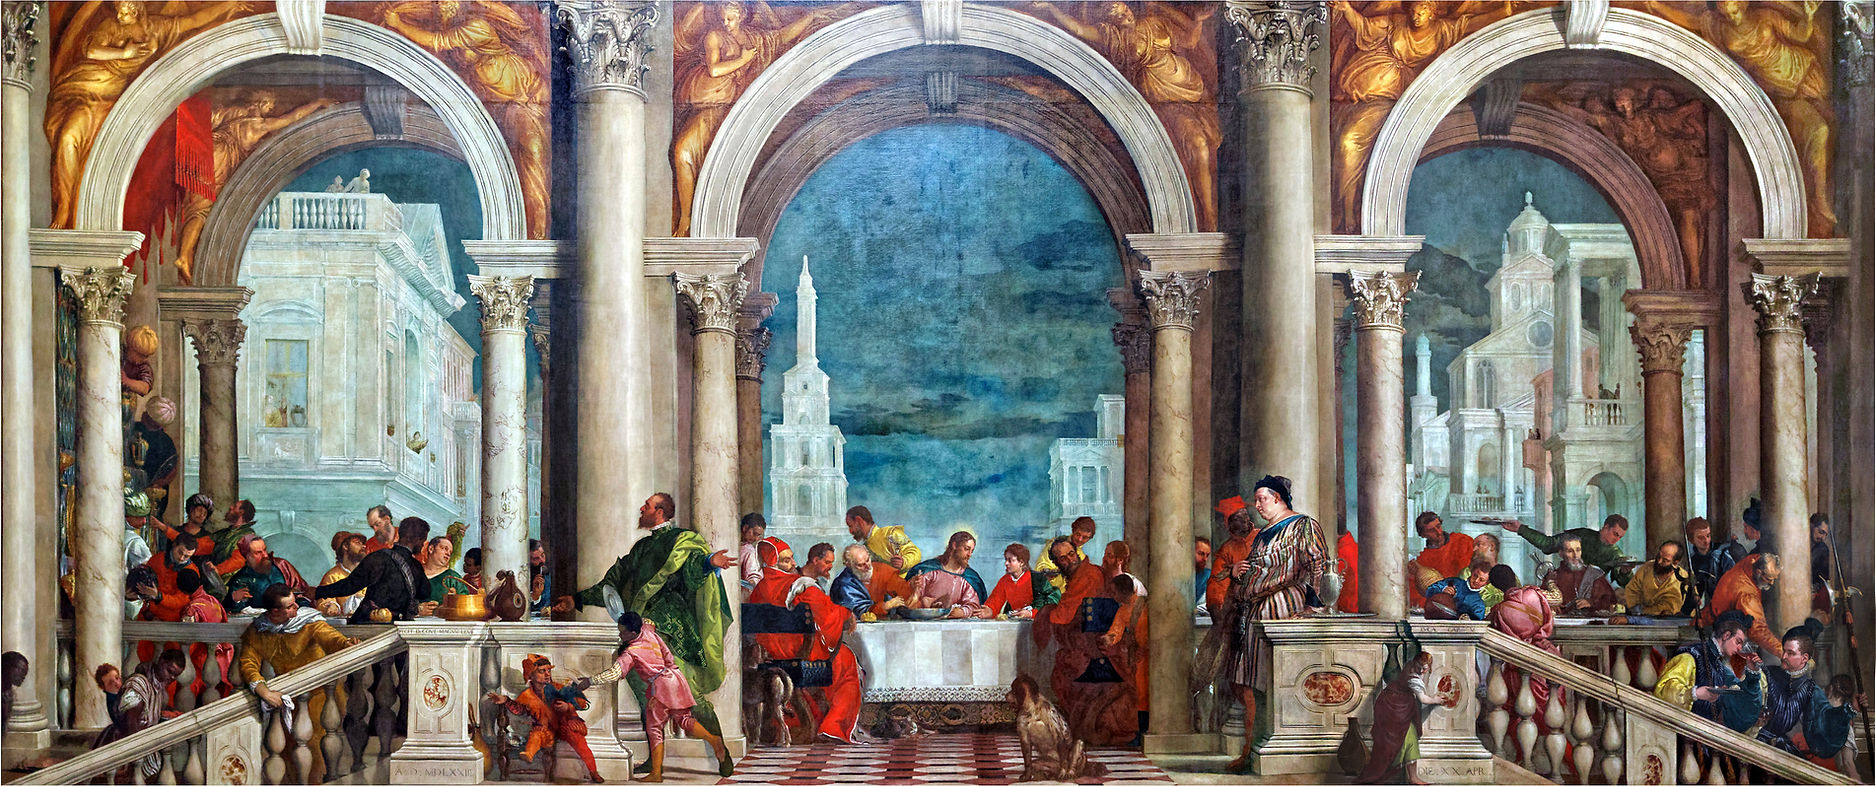 Paolo Veronese "Convito in casa di Levi" 1573, olio su tela, cm. 555x1310, Gallerie dell’Accademia, Venezia (Fig.1)